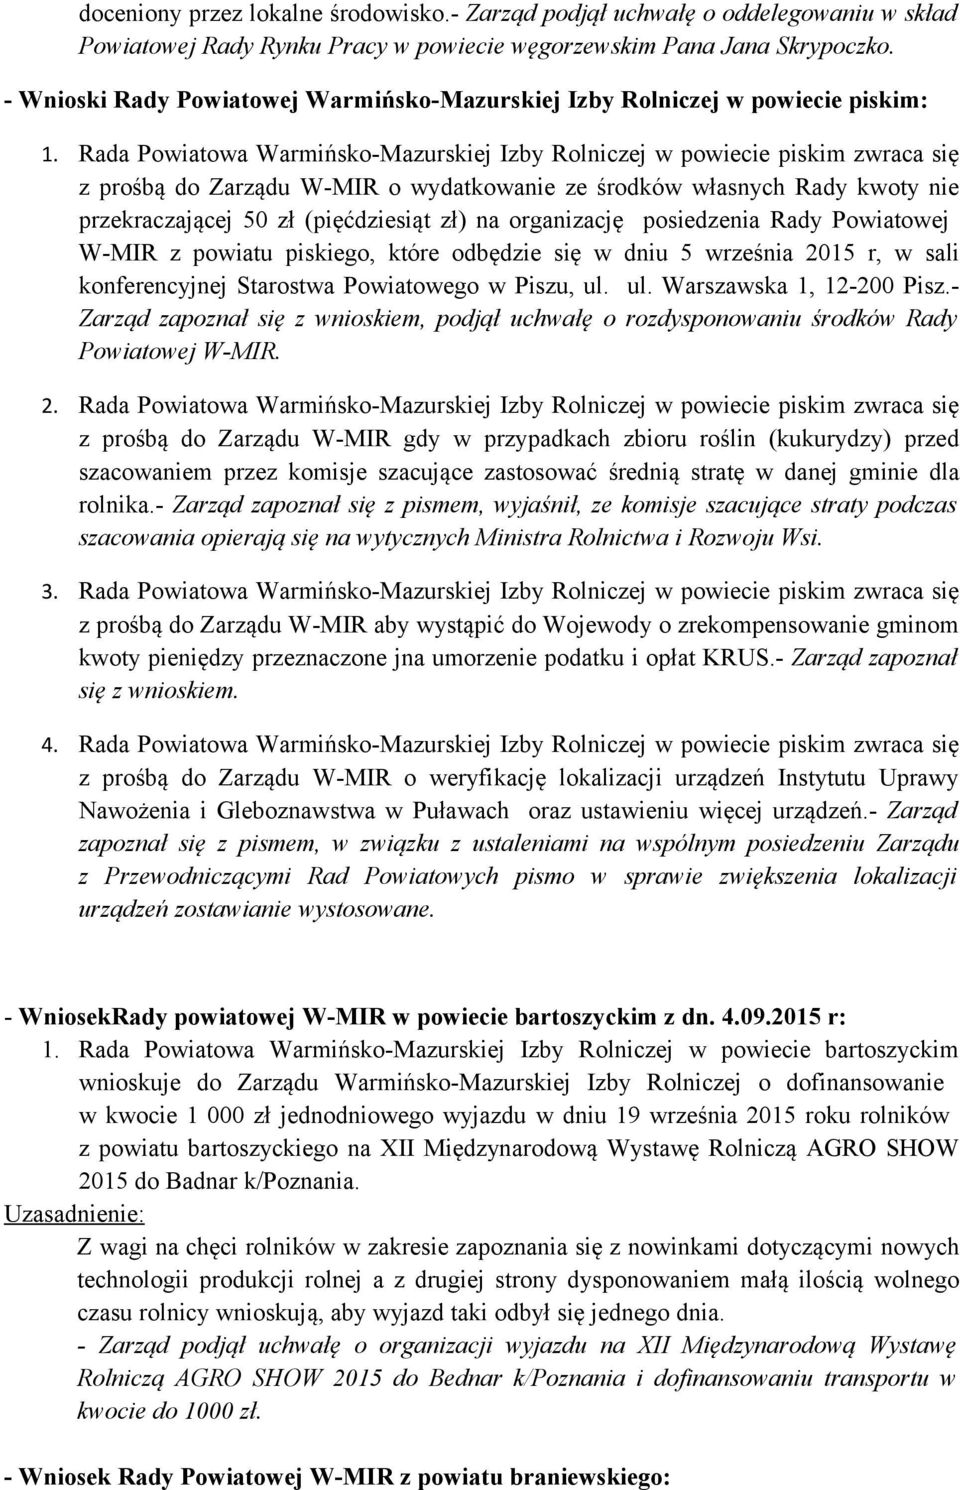 Rada Powiatowa Warmińsko-Mazurskiej Izby Rolniczej w powiecie piskim zwraca się z prośbą do Zarządu W-MIR o wydatkowanie ze środków własnych Rady kwoty nie przekraczającej 50 zł (pięćdziesiąt zł) na